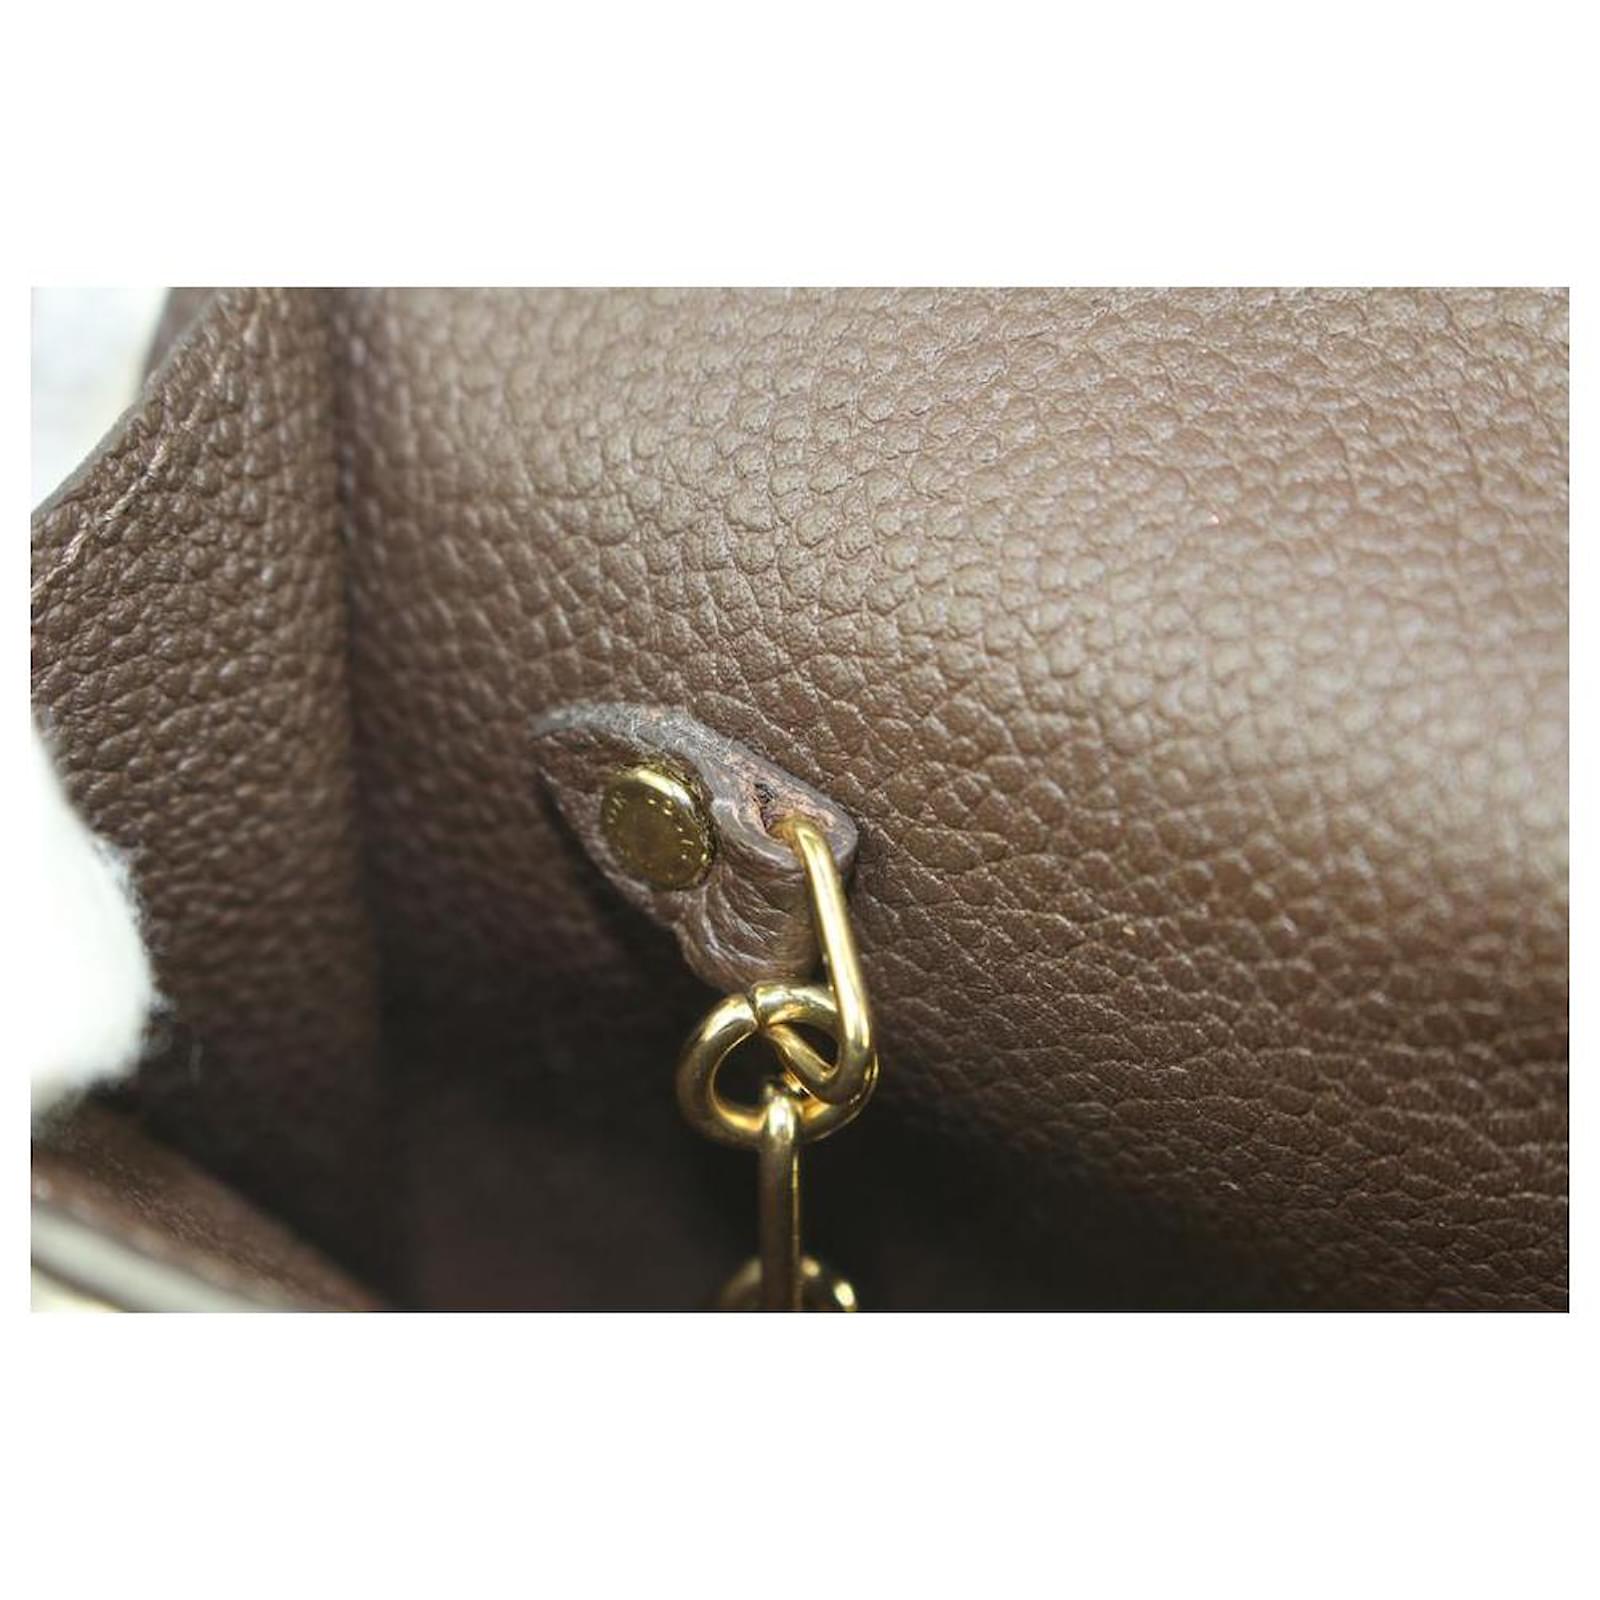 empreinte leather key